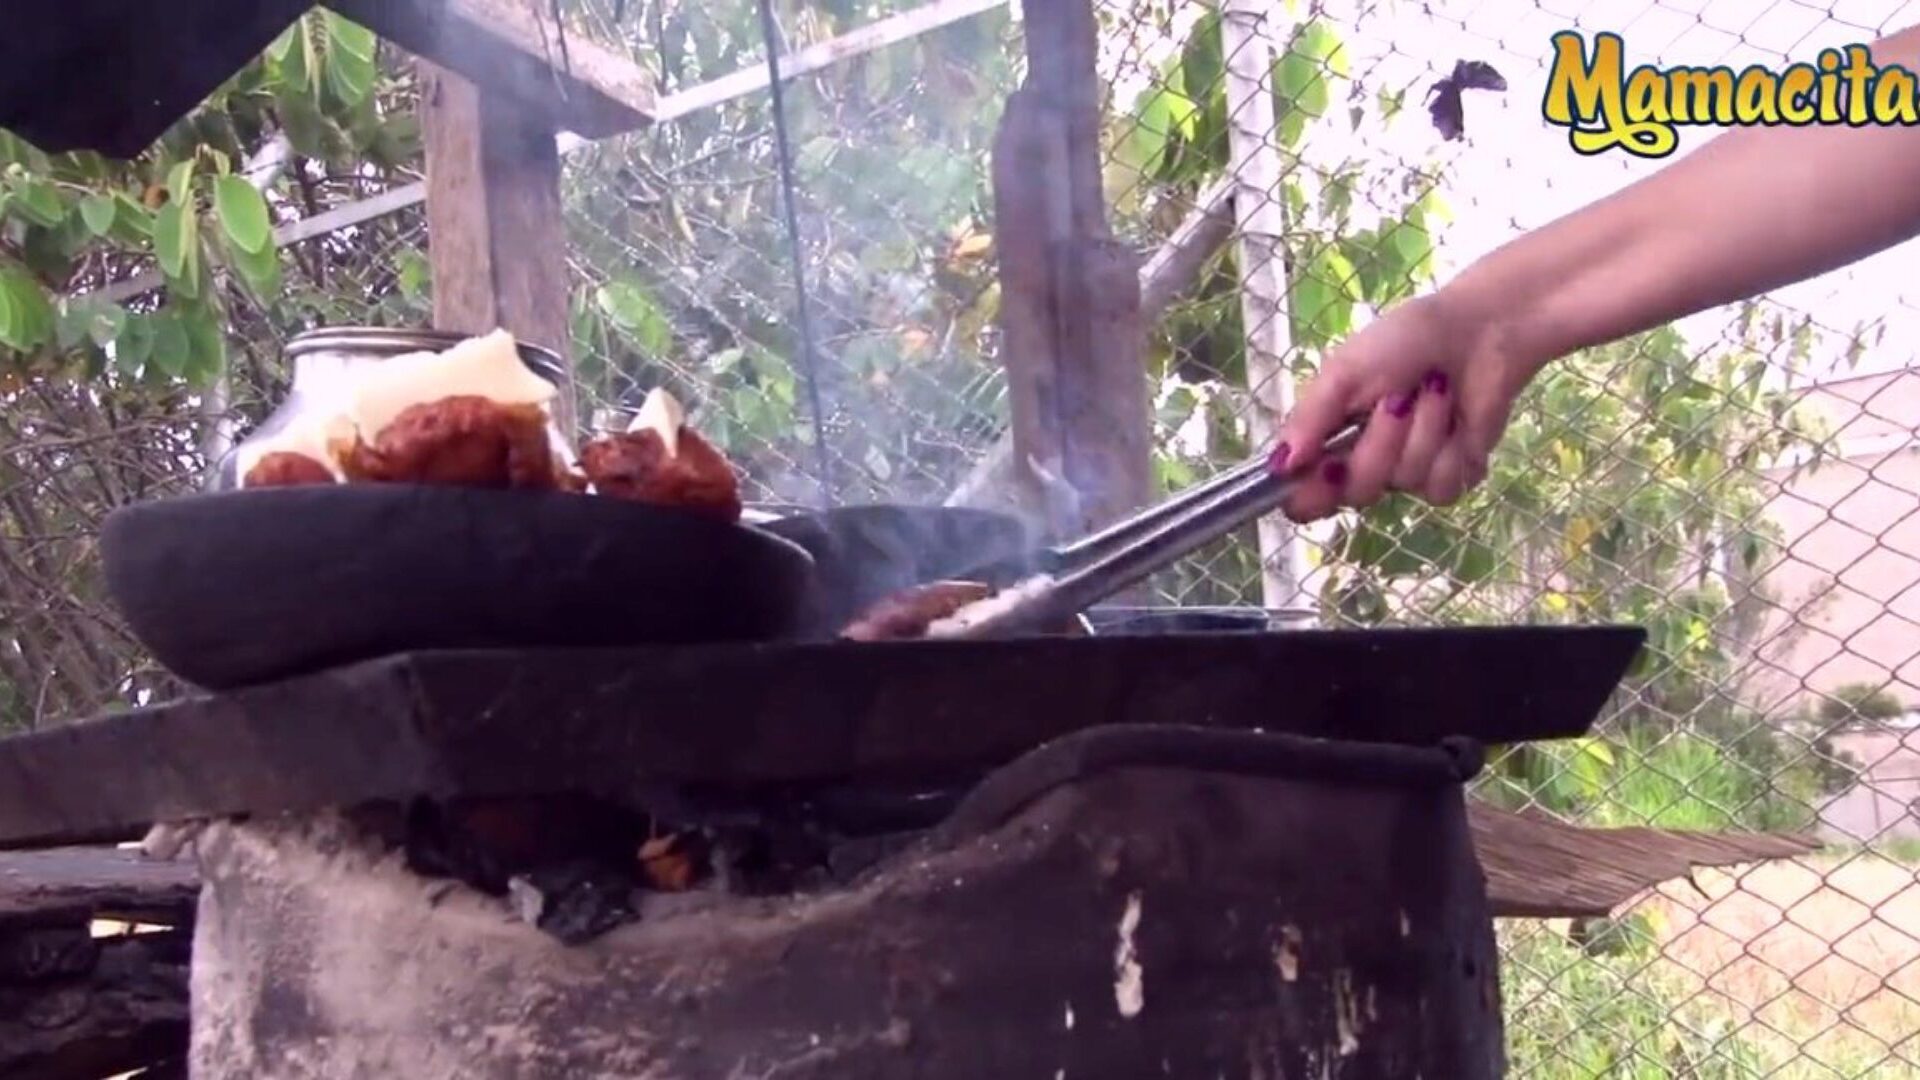 mamacitaz - erittäin kuuma kolumbialainen lihamyyjä kaipaa erityyppistä lihaa